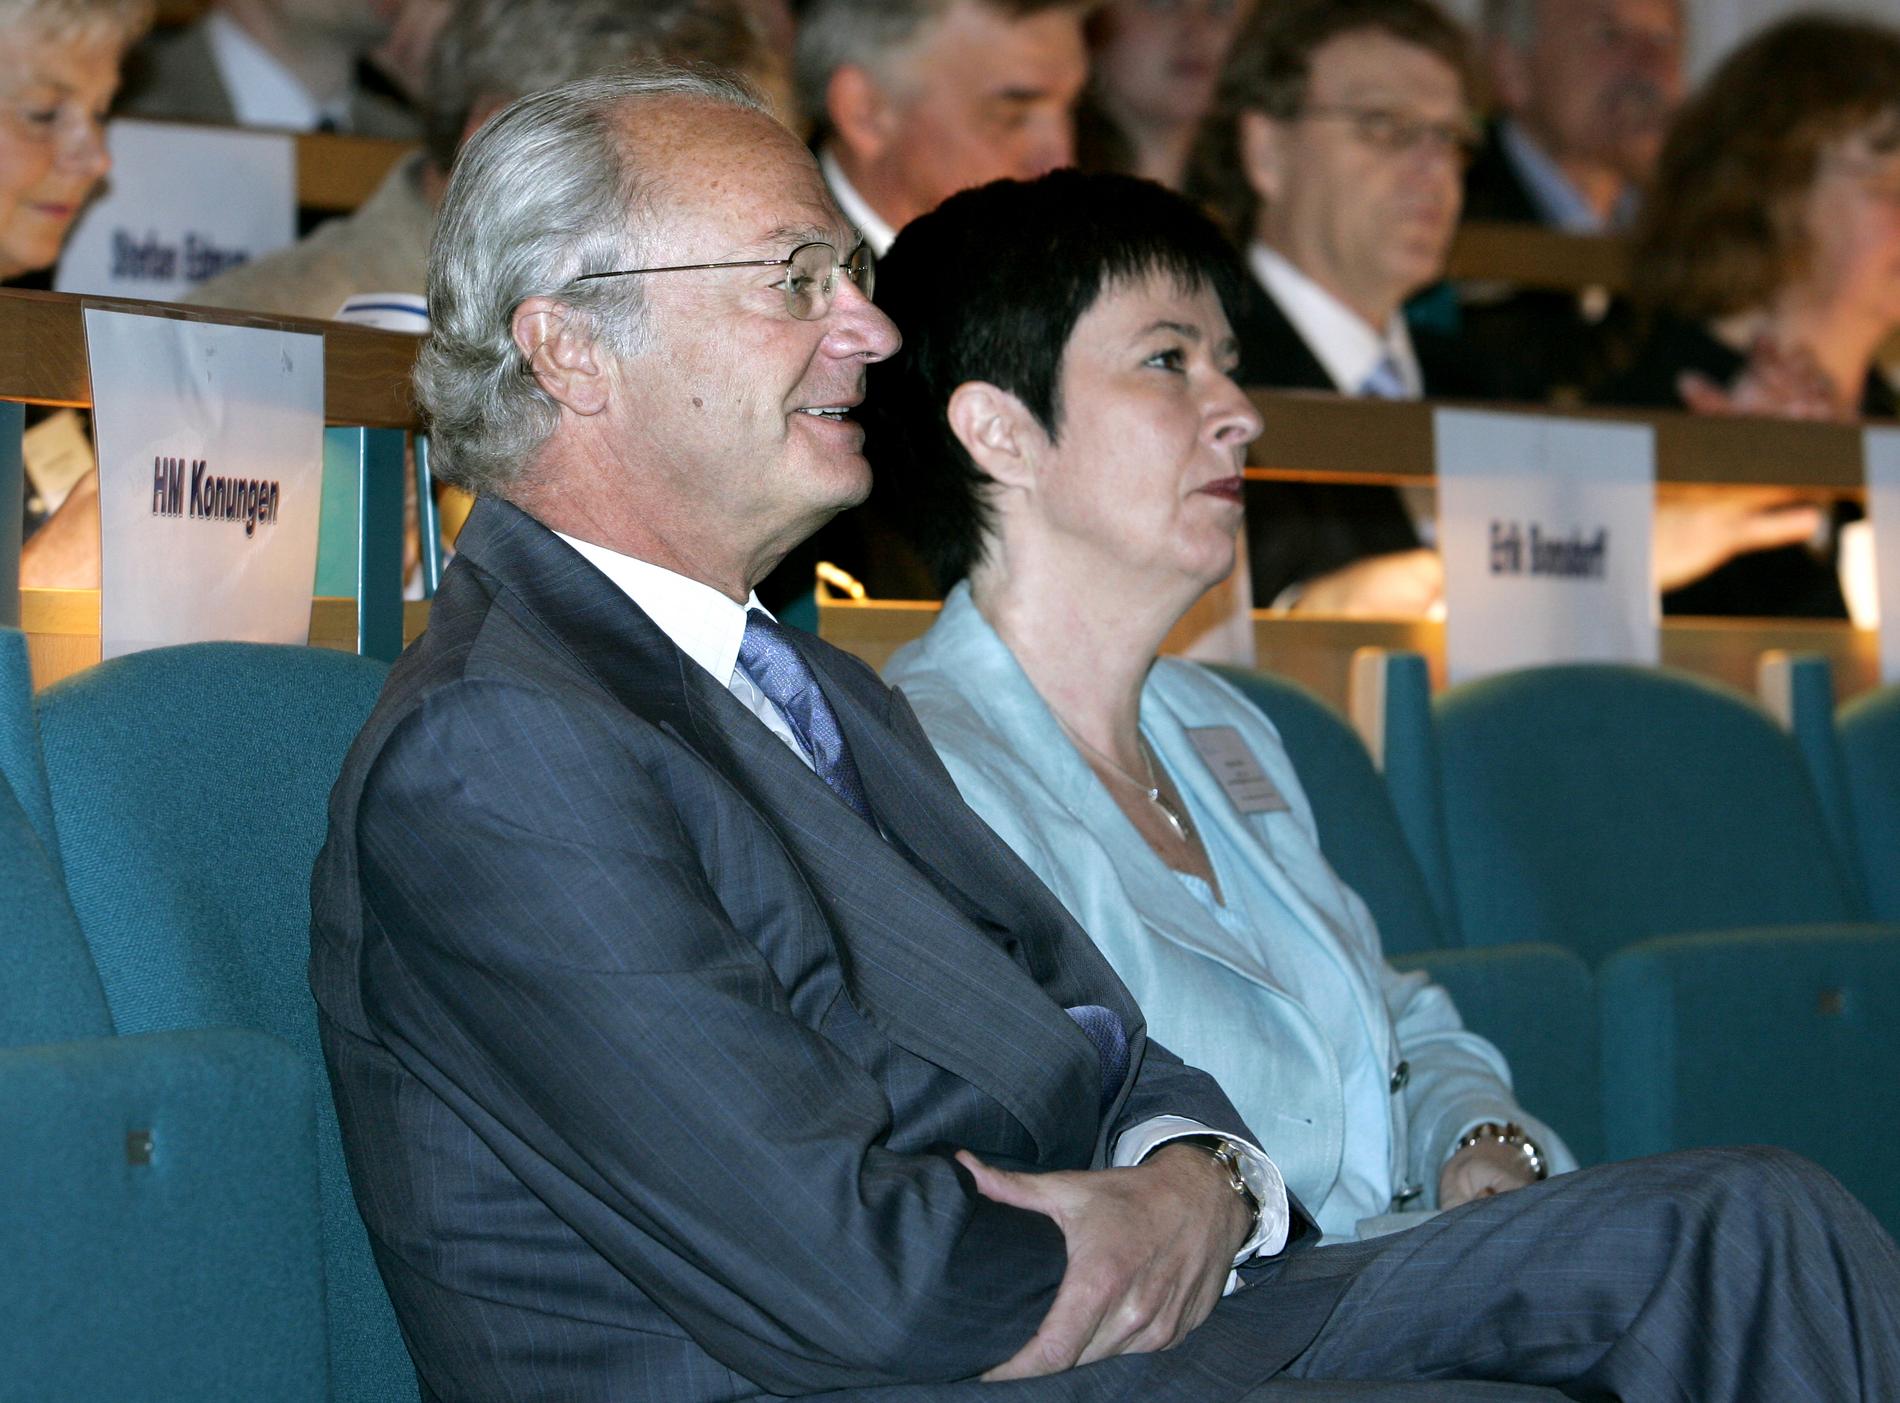 2006 Kung Carl Gustaf och samhällsbyggnadsminister Mona Sahlin under invigningen av IVL, Svenska Miljöinstitutets 40 års-jubileum i Aula Magna i Stockholm.